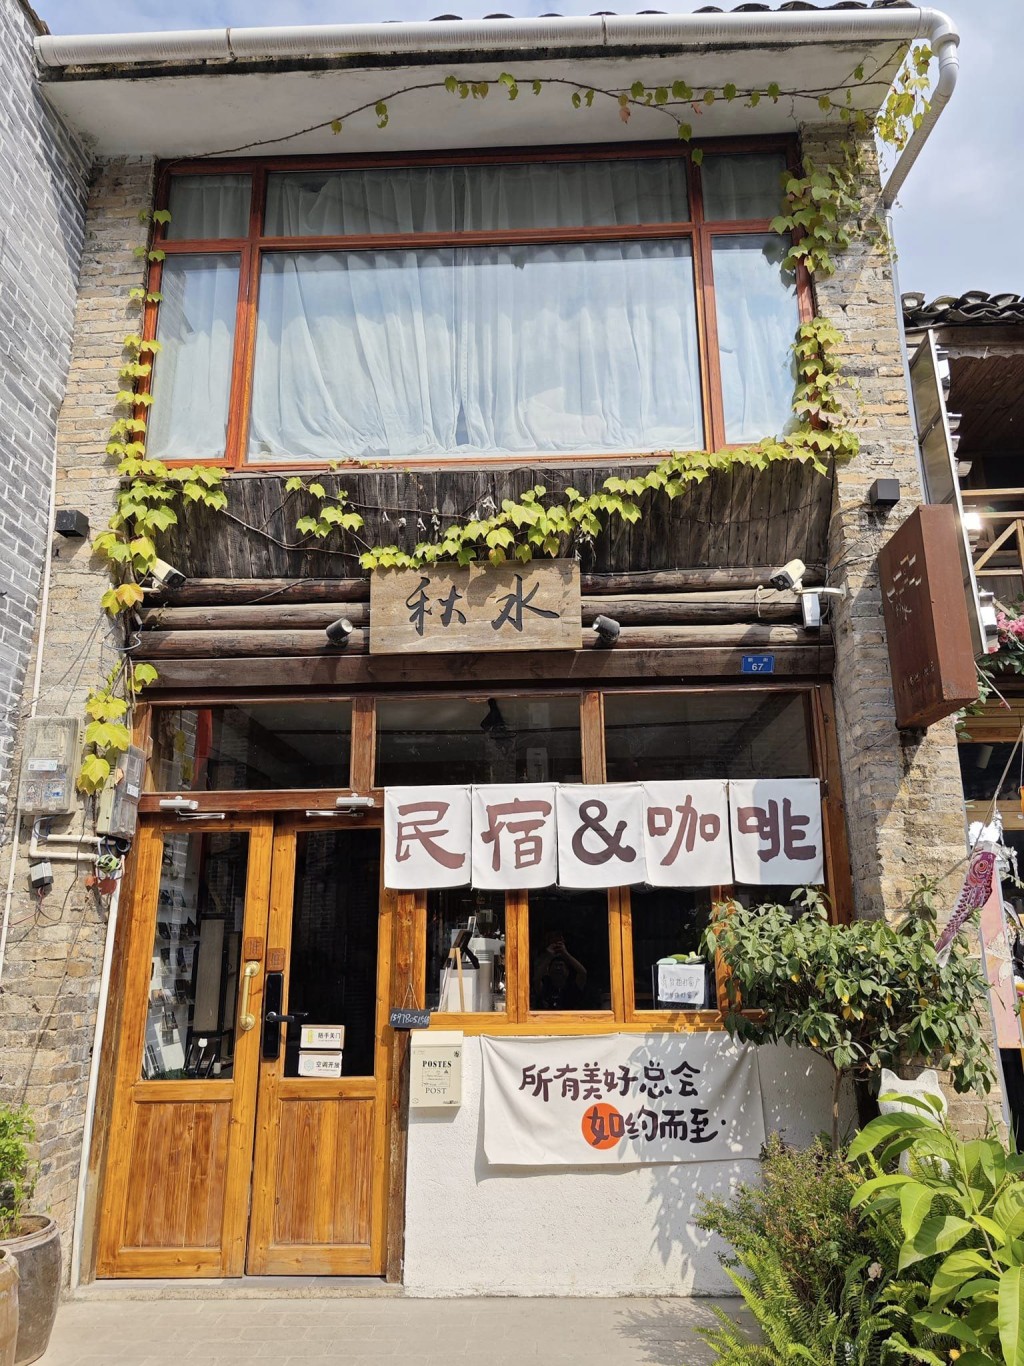 兴坪古镇内的咖啡店。图片授权Byron Chan